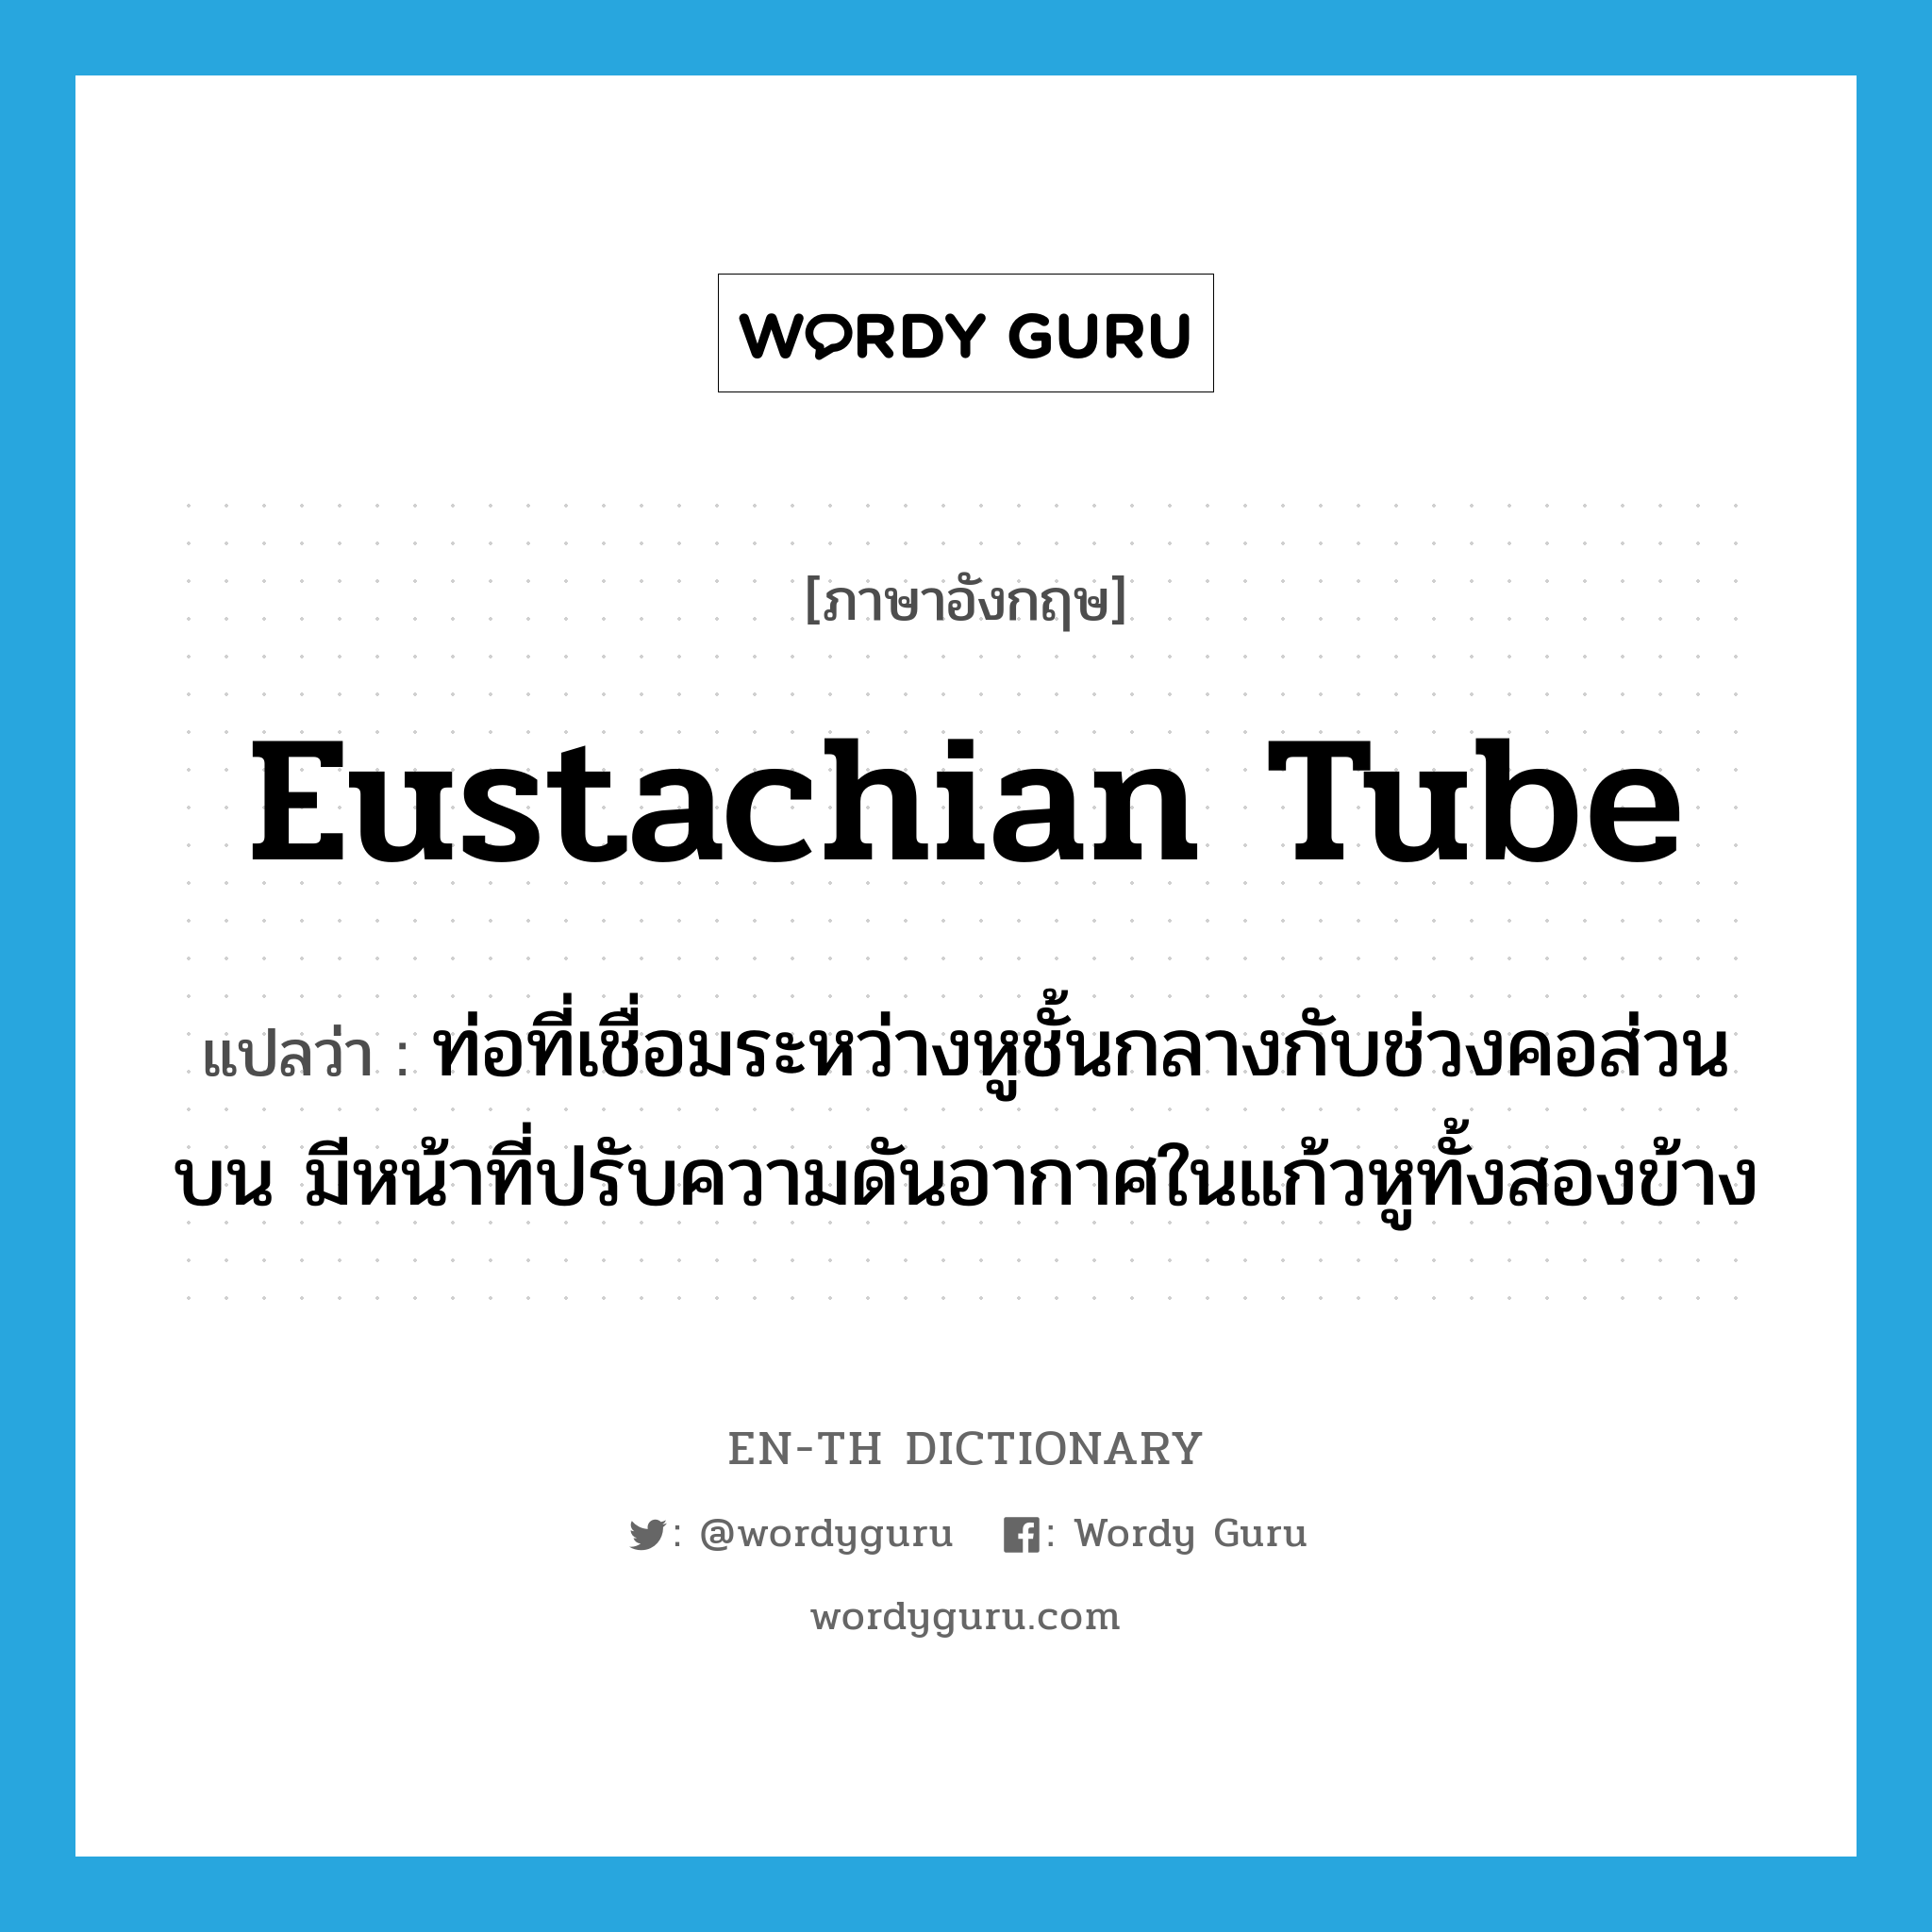 eustachian tube แปลว่า?, คำศัพท์ภาษาอังกฤษ eustachian tube แปลว่า ท่อที่เชื่อมระหว่างหูชั้นกลางกับช่วงคอส่วนบน มีหน้าที่ปรับความดันอากาศในแก้วหูทั้งสองข้าง ประเภท N หมวด N